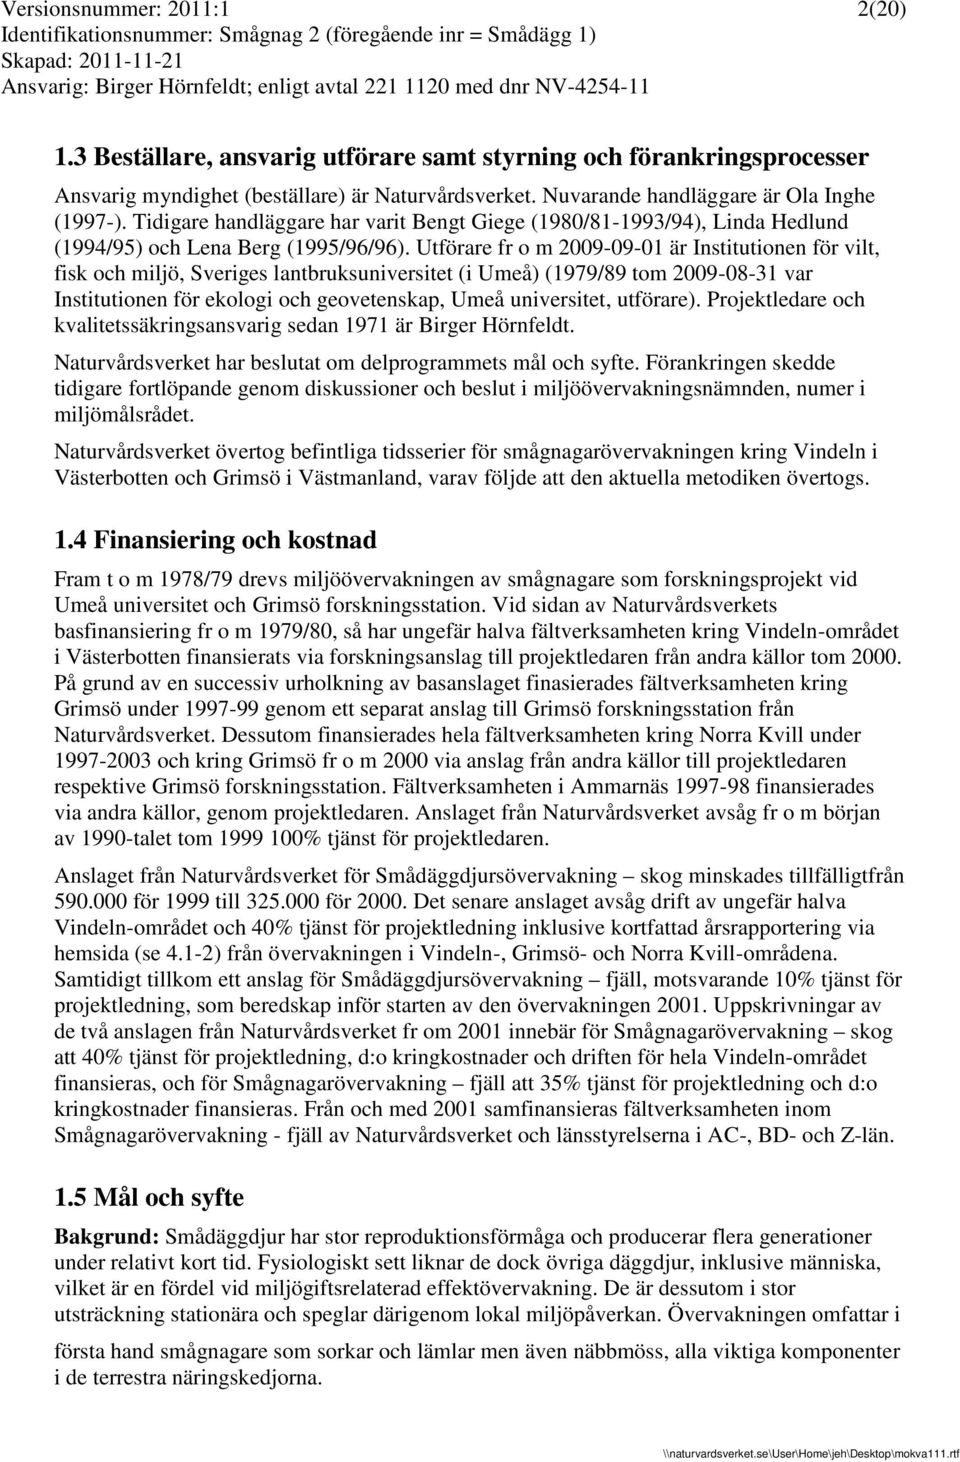 Utförare fr o m 2009-09-01 är Institutionen för vilt, fisk och miljö, Sveriges lantbruksuniversitet (i Umeå) (1979/89 tom 2009-08-31 var Institutionen för ekologi och geovetenskap, Umeå universitet,